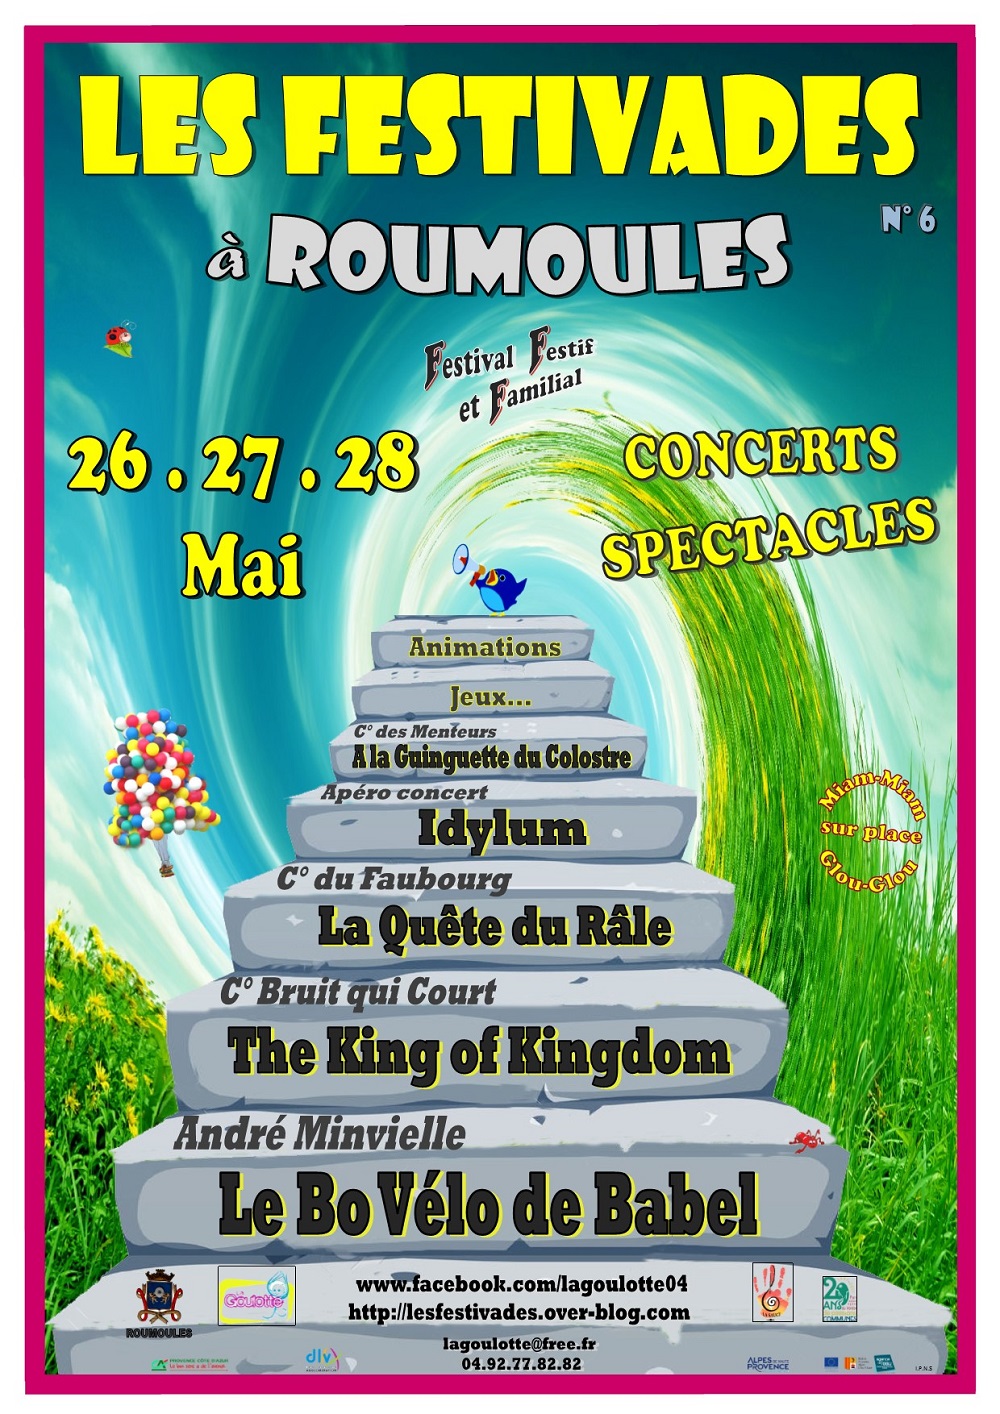 La 6ème édition des Festivades ce week-end à Roumoules